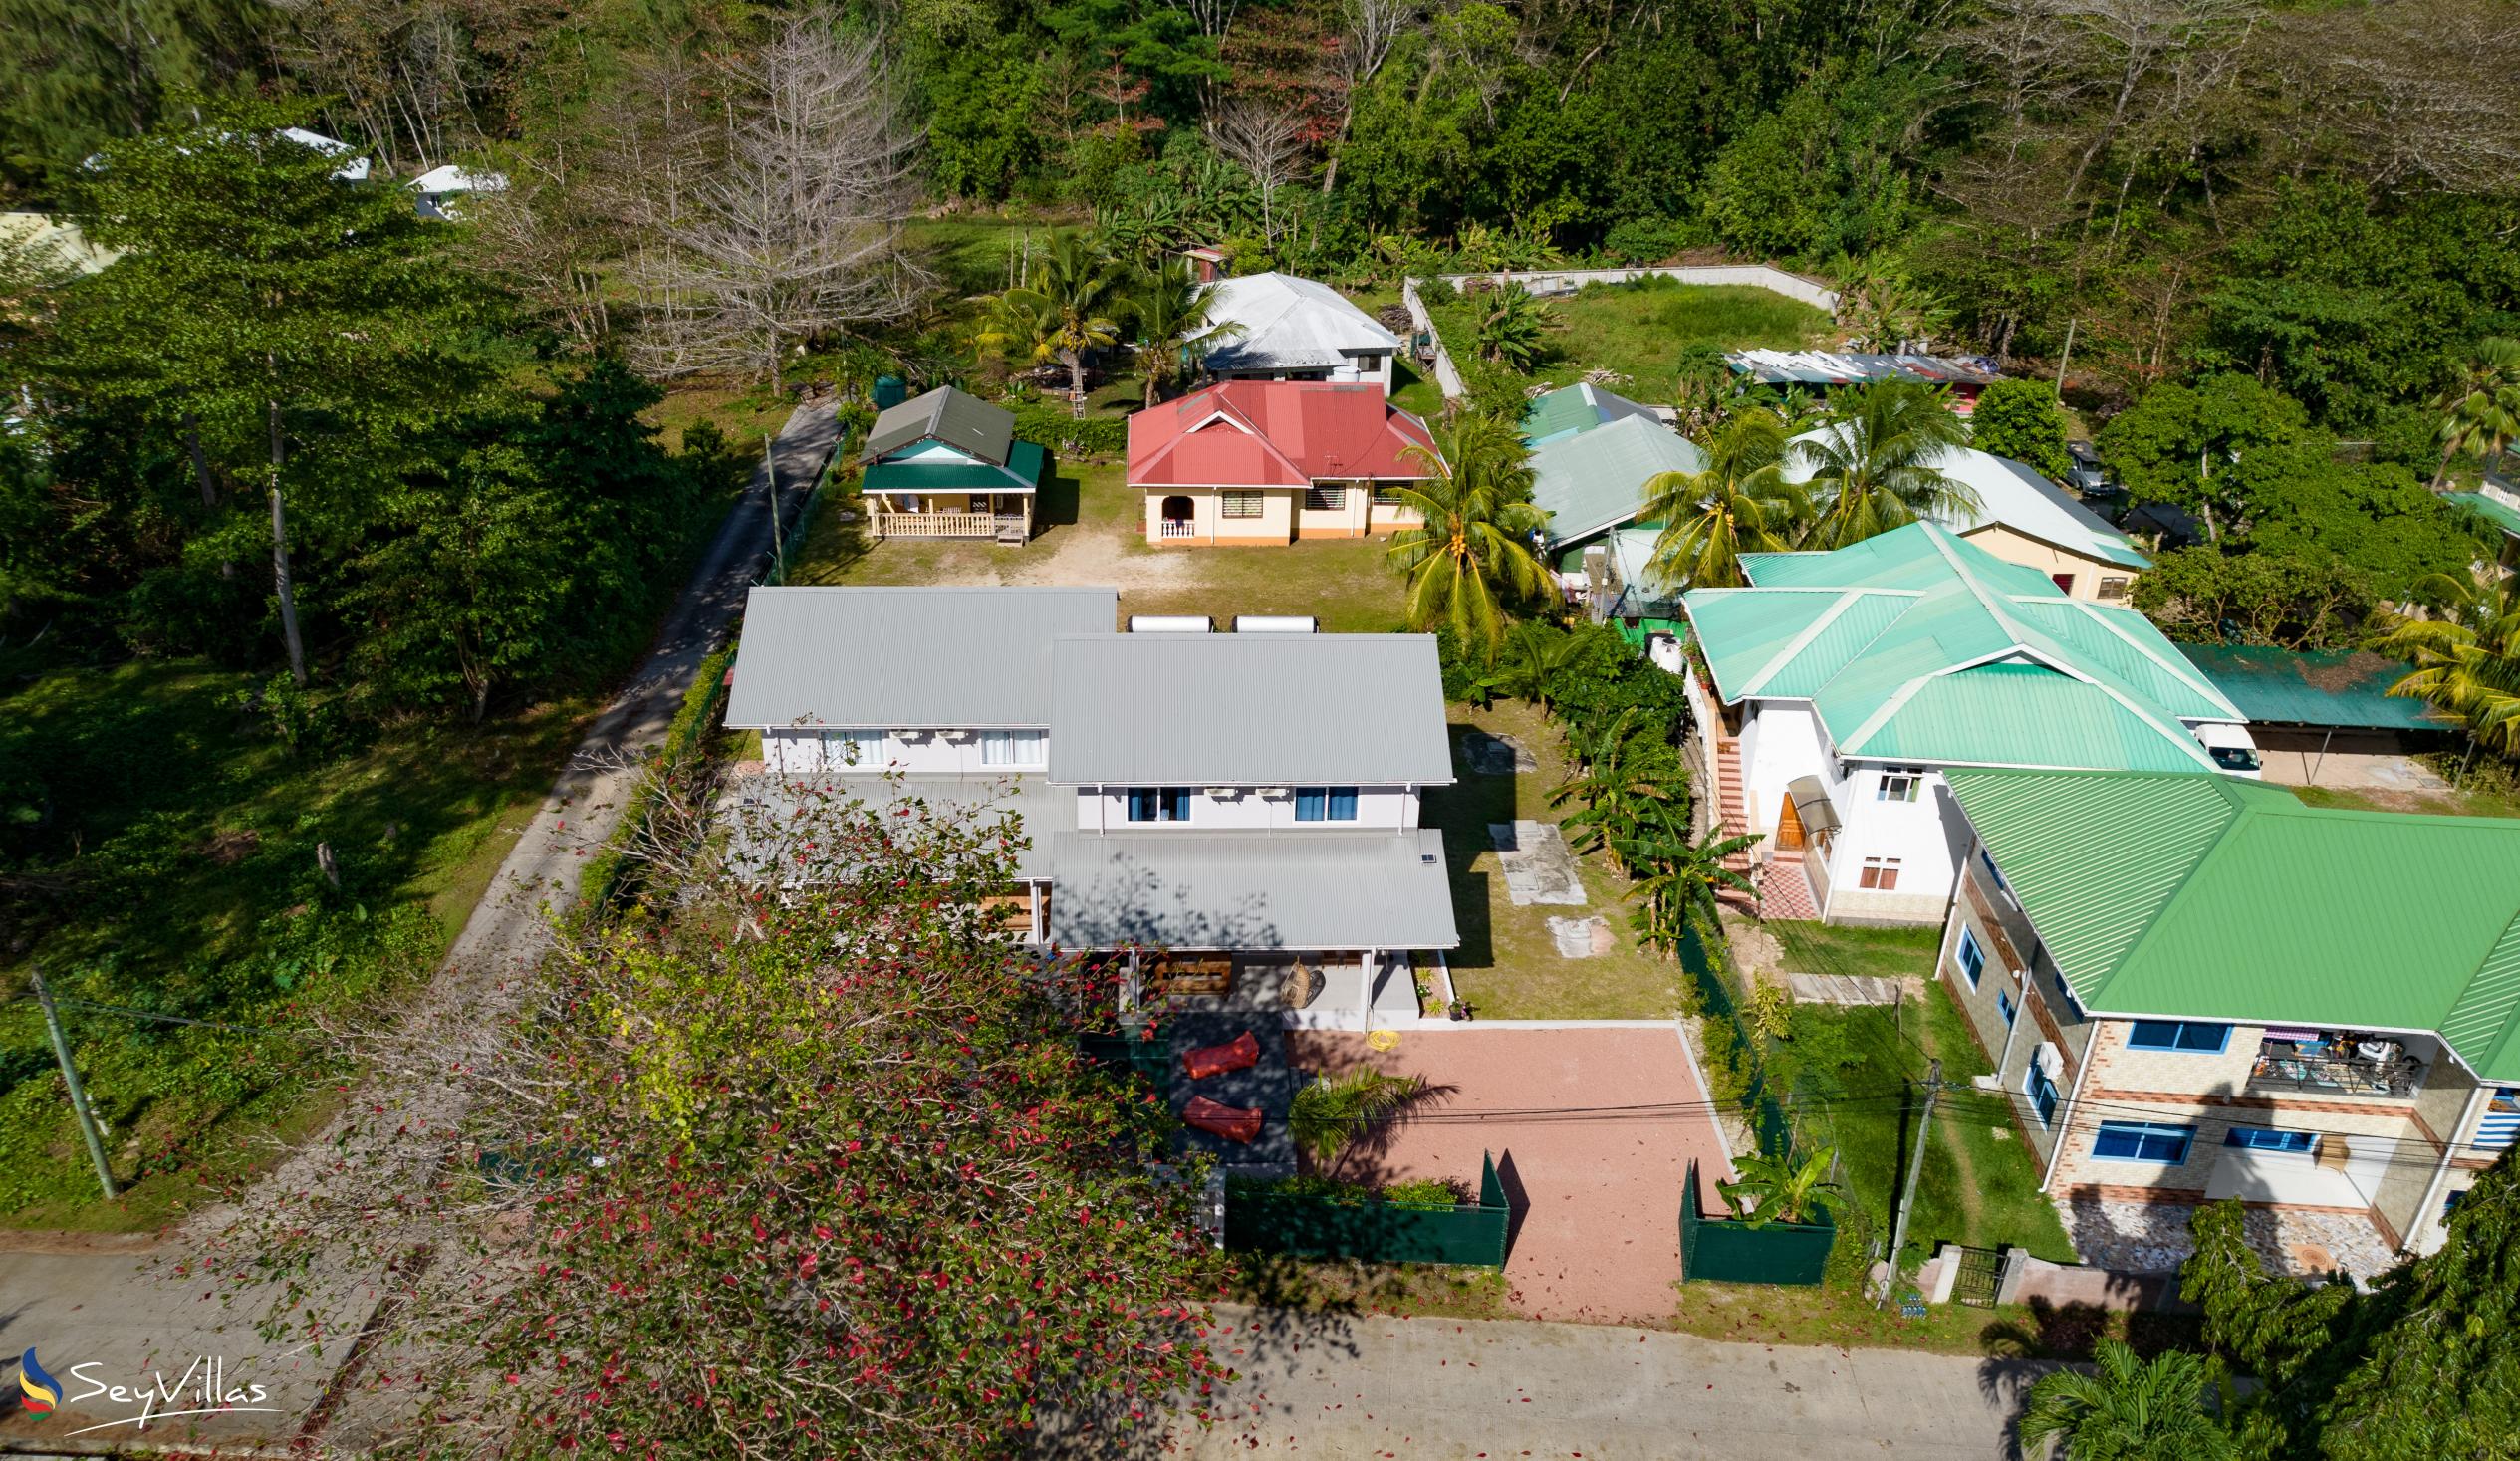 Foto 17: Maison Marie-Jeanne - Aussenbereich - Praslin (Seychellen)